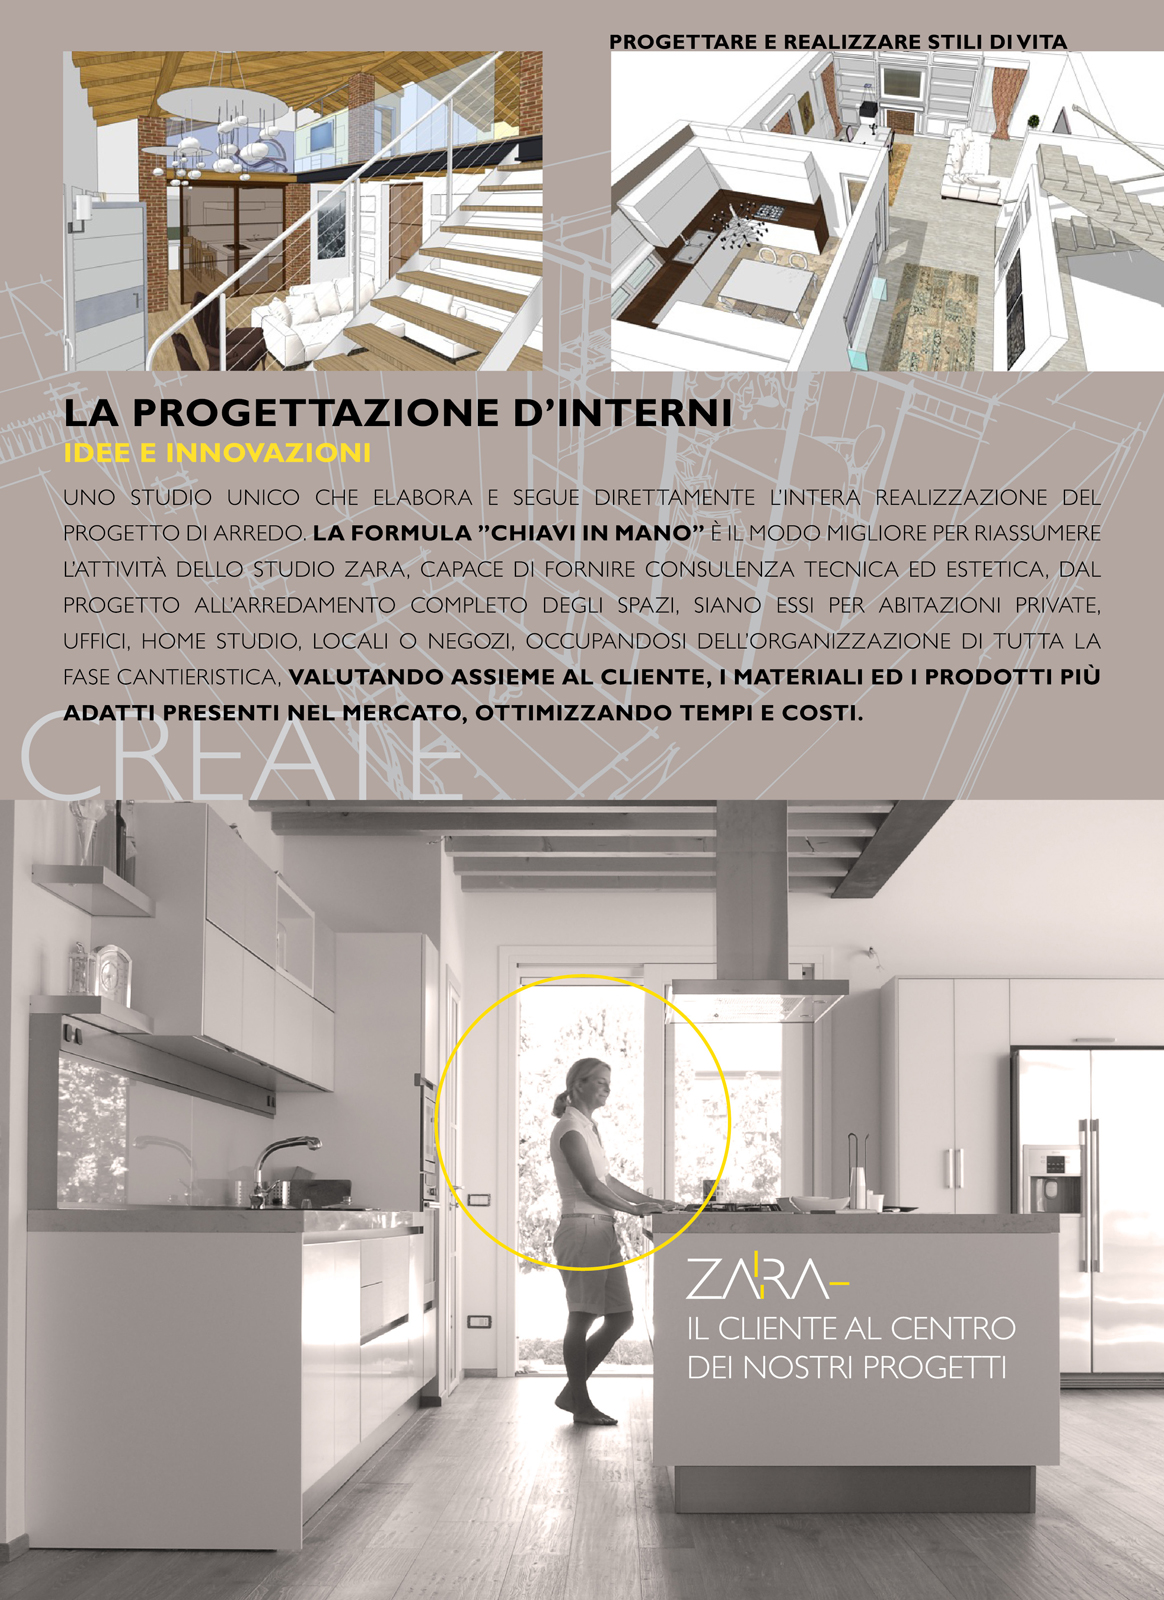 Brochure per Architetto / Designer d’Interni